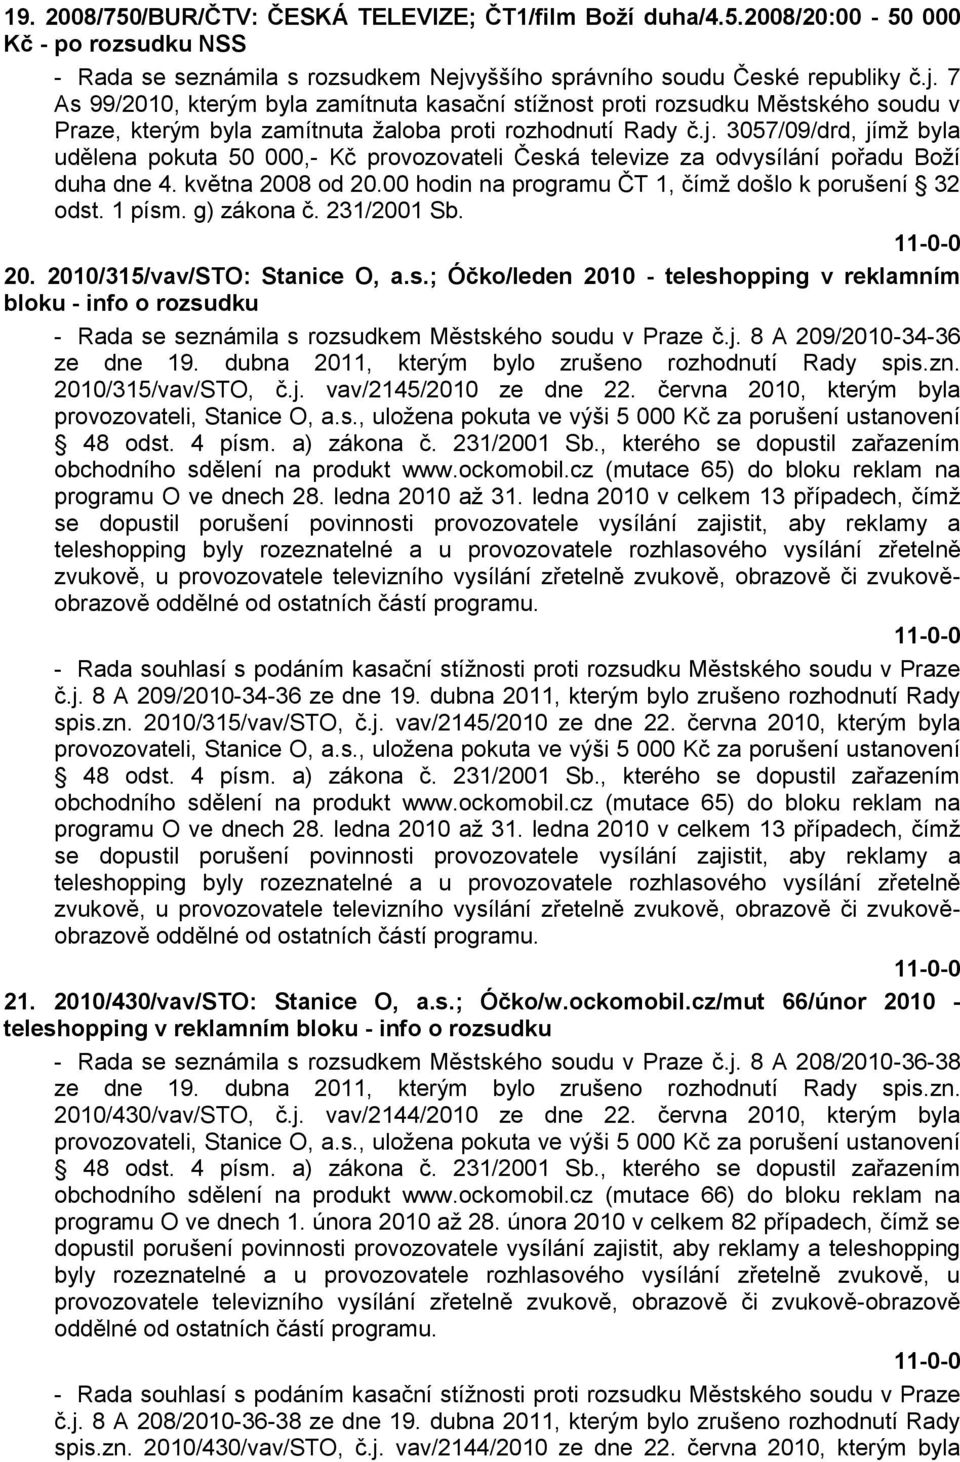 května 2008 od 20.00 hodin na programu ČT 1, čímţ došlo k porušení 32 odst